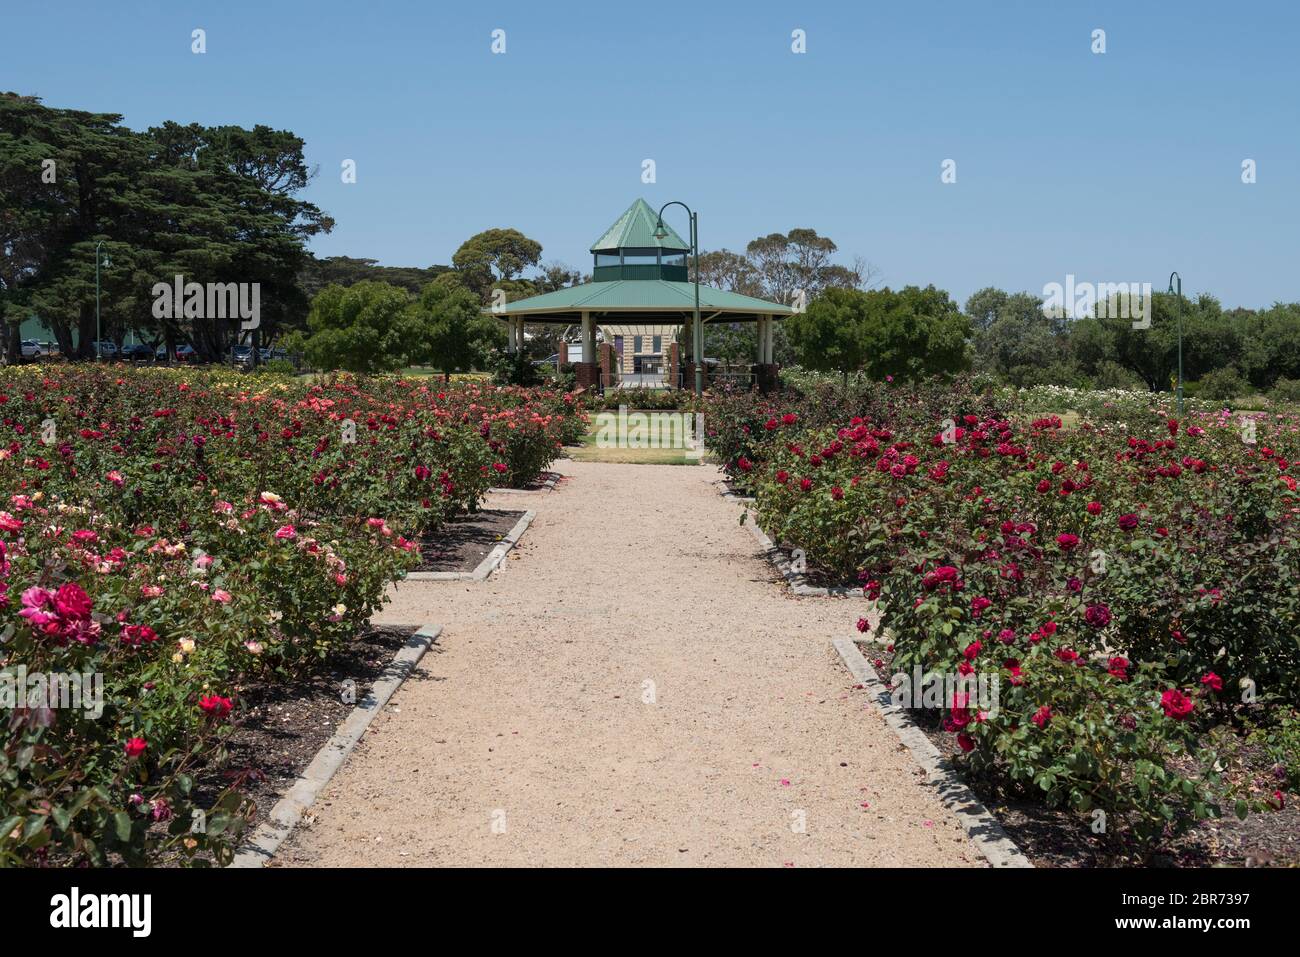 Jardins botaniques de Mornington, Mornington, Victoria, Australie Banque D'Images